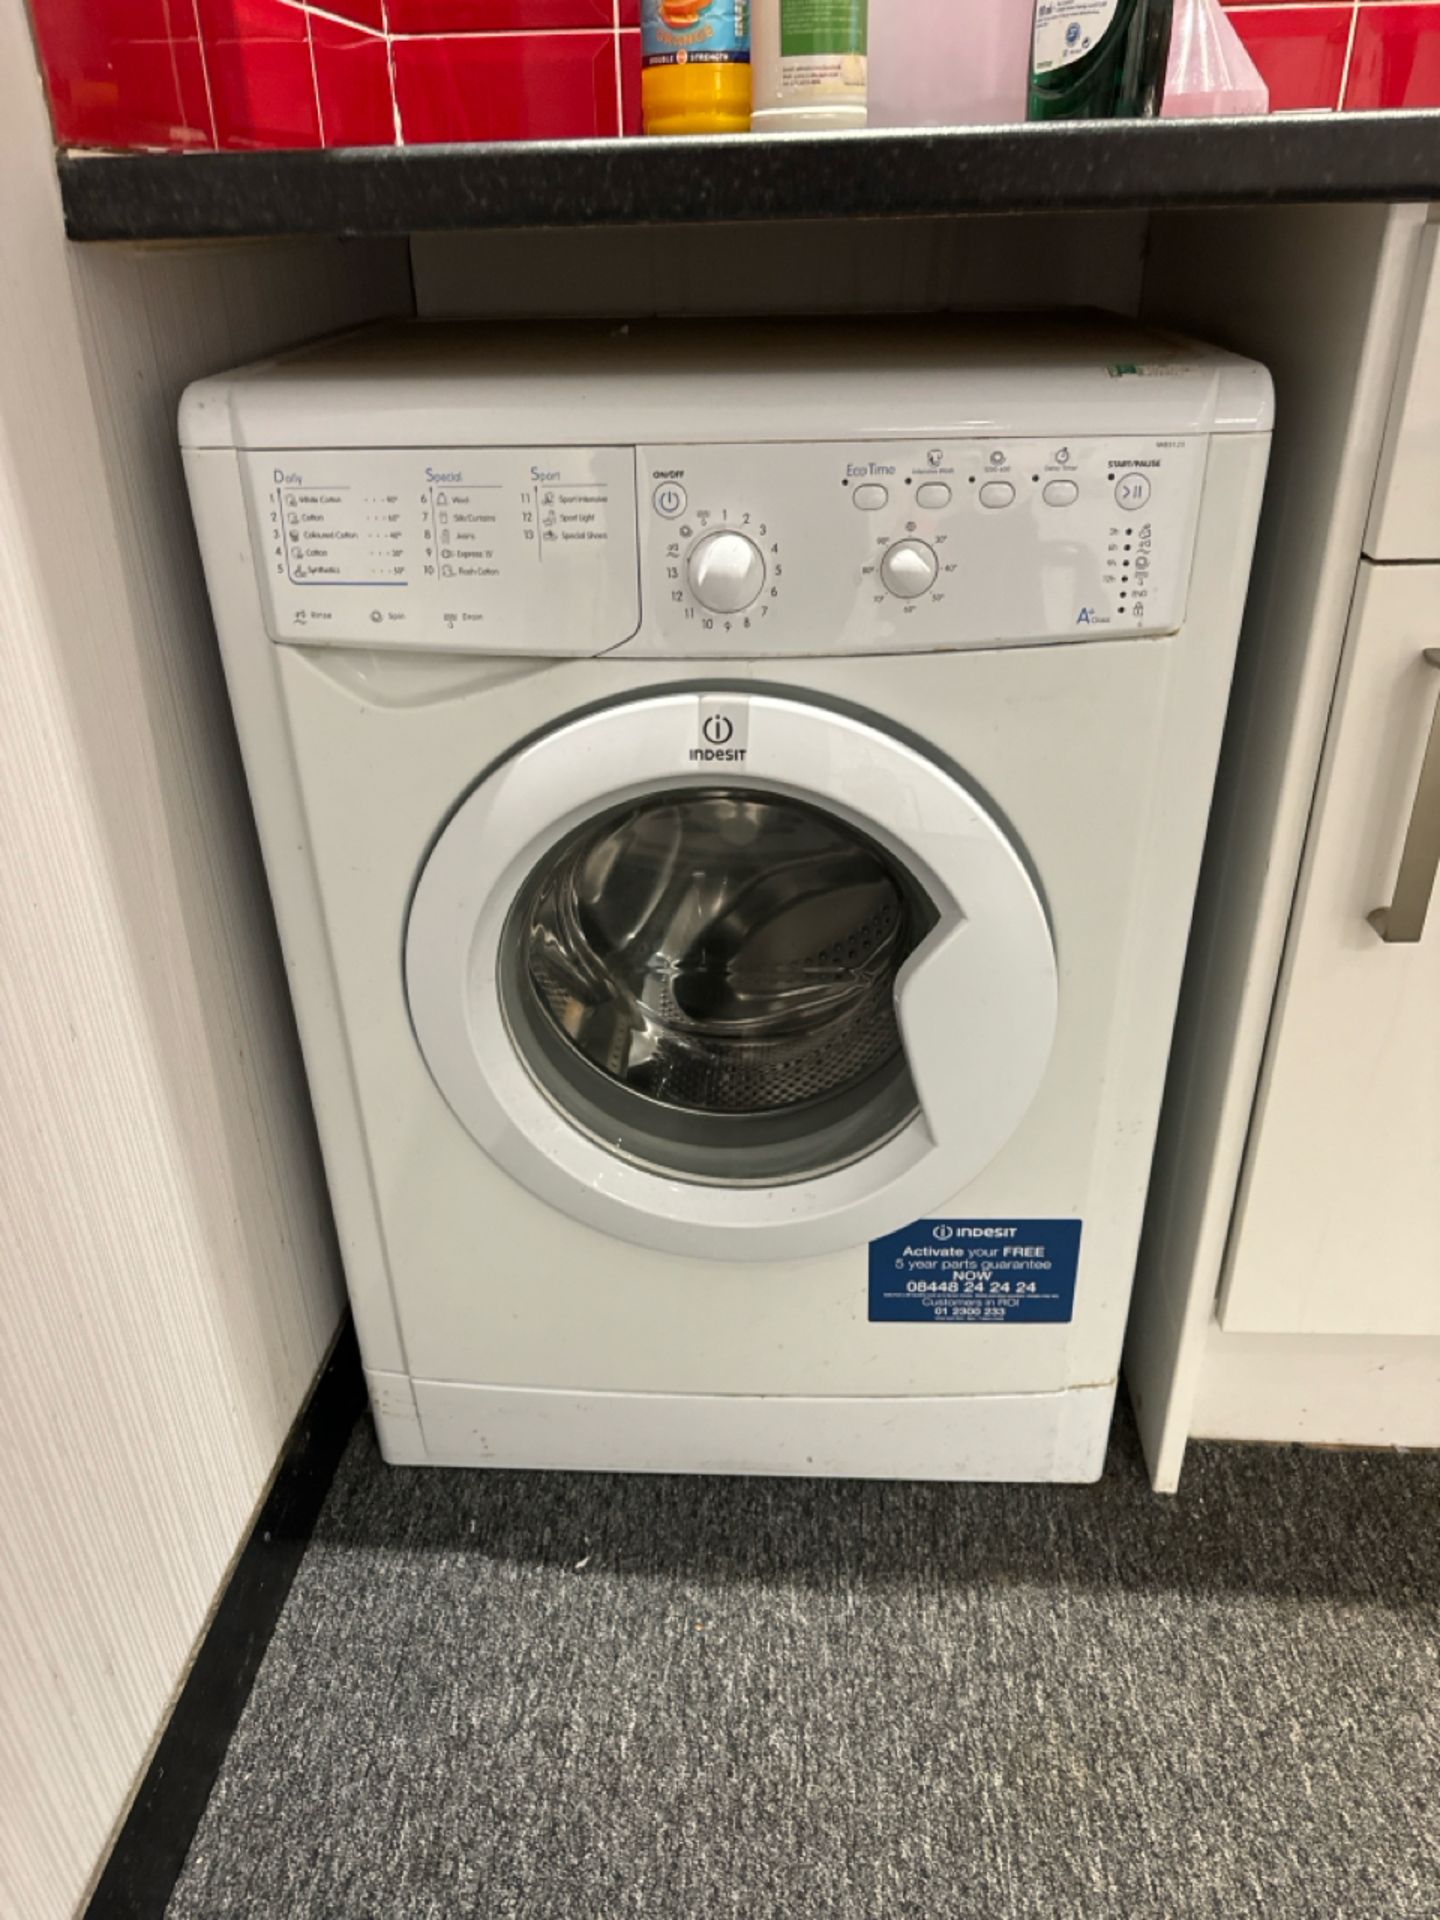 Indesit Washing Machine - Image 2 of 3